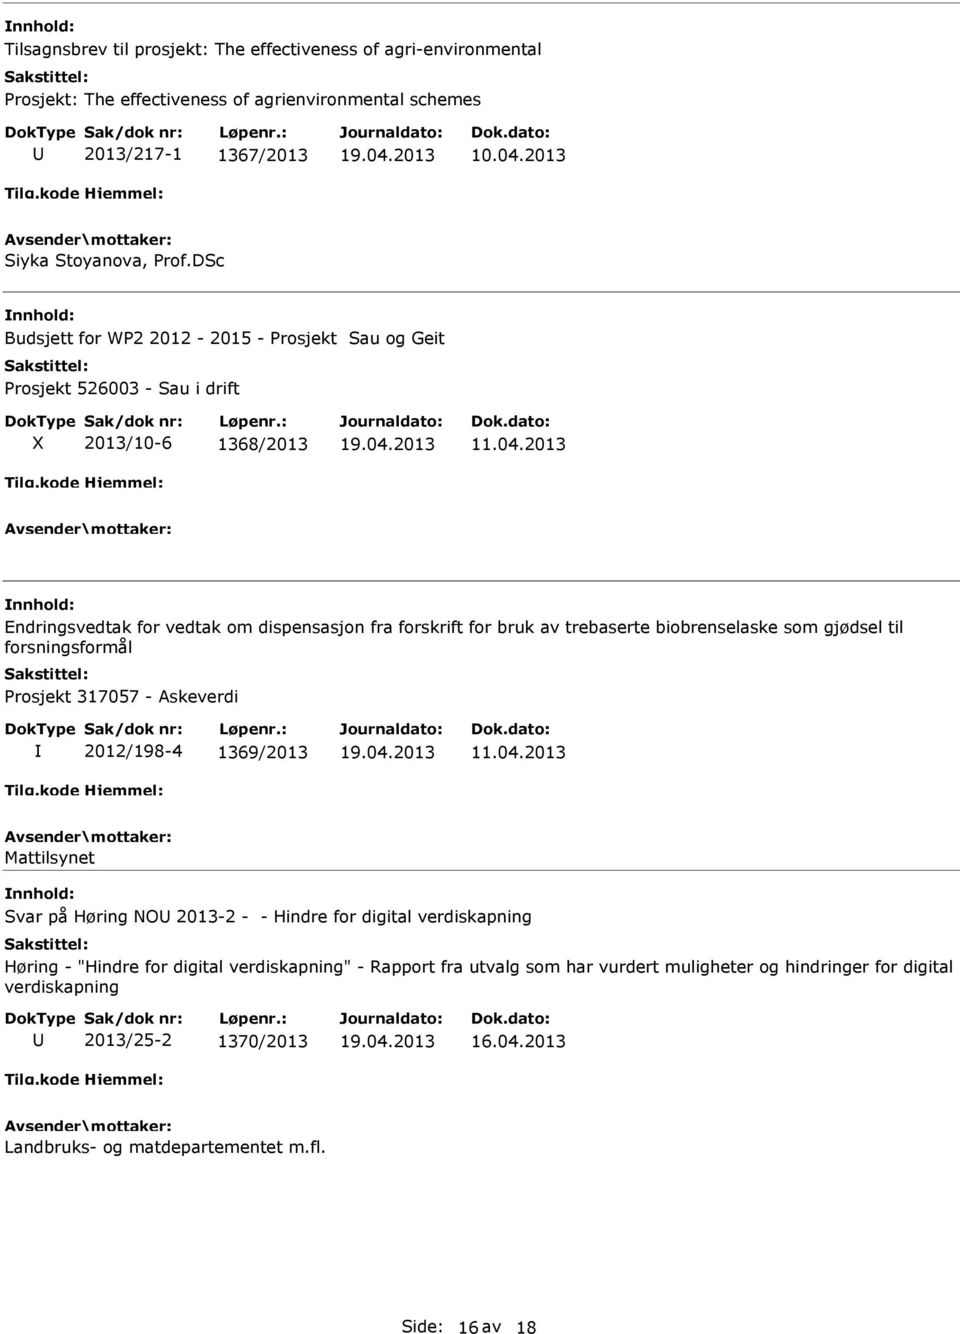 2013 Endringsvedtak for vedtak om dispensasjon fra forskrift for bruk av trebaserte biobrenselaske som gjødsel til forsningsformål Prosjekt 317057 - Askeverdi 2012/198-4 1369/2013 11.04.